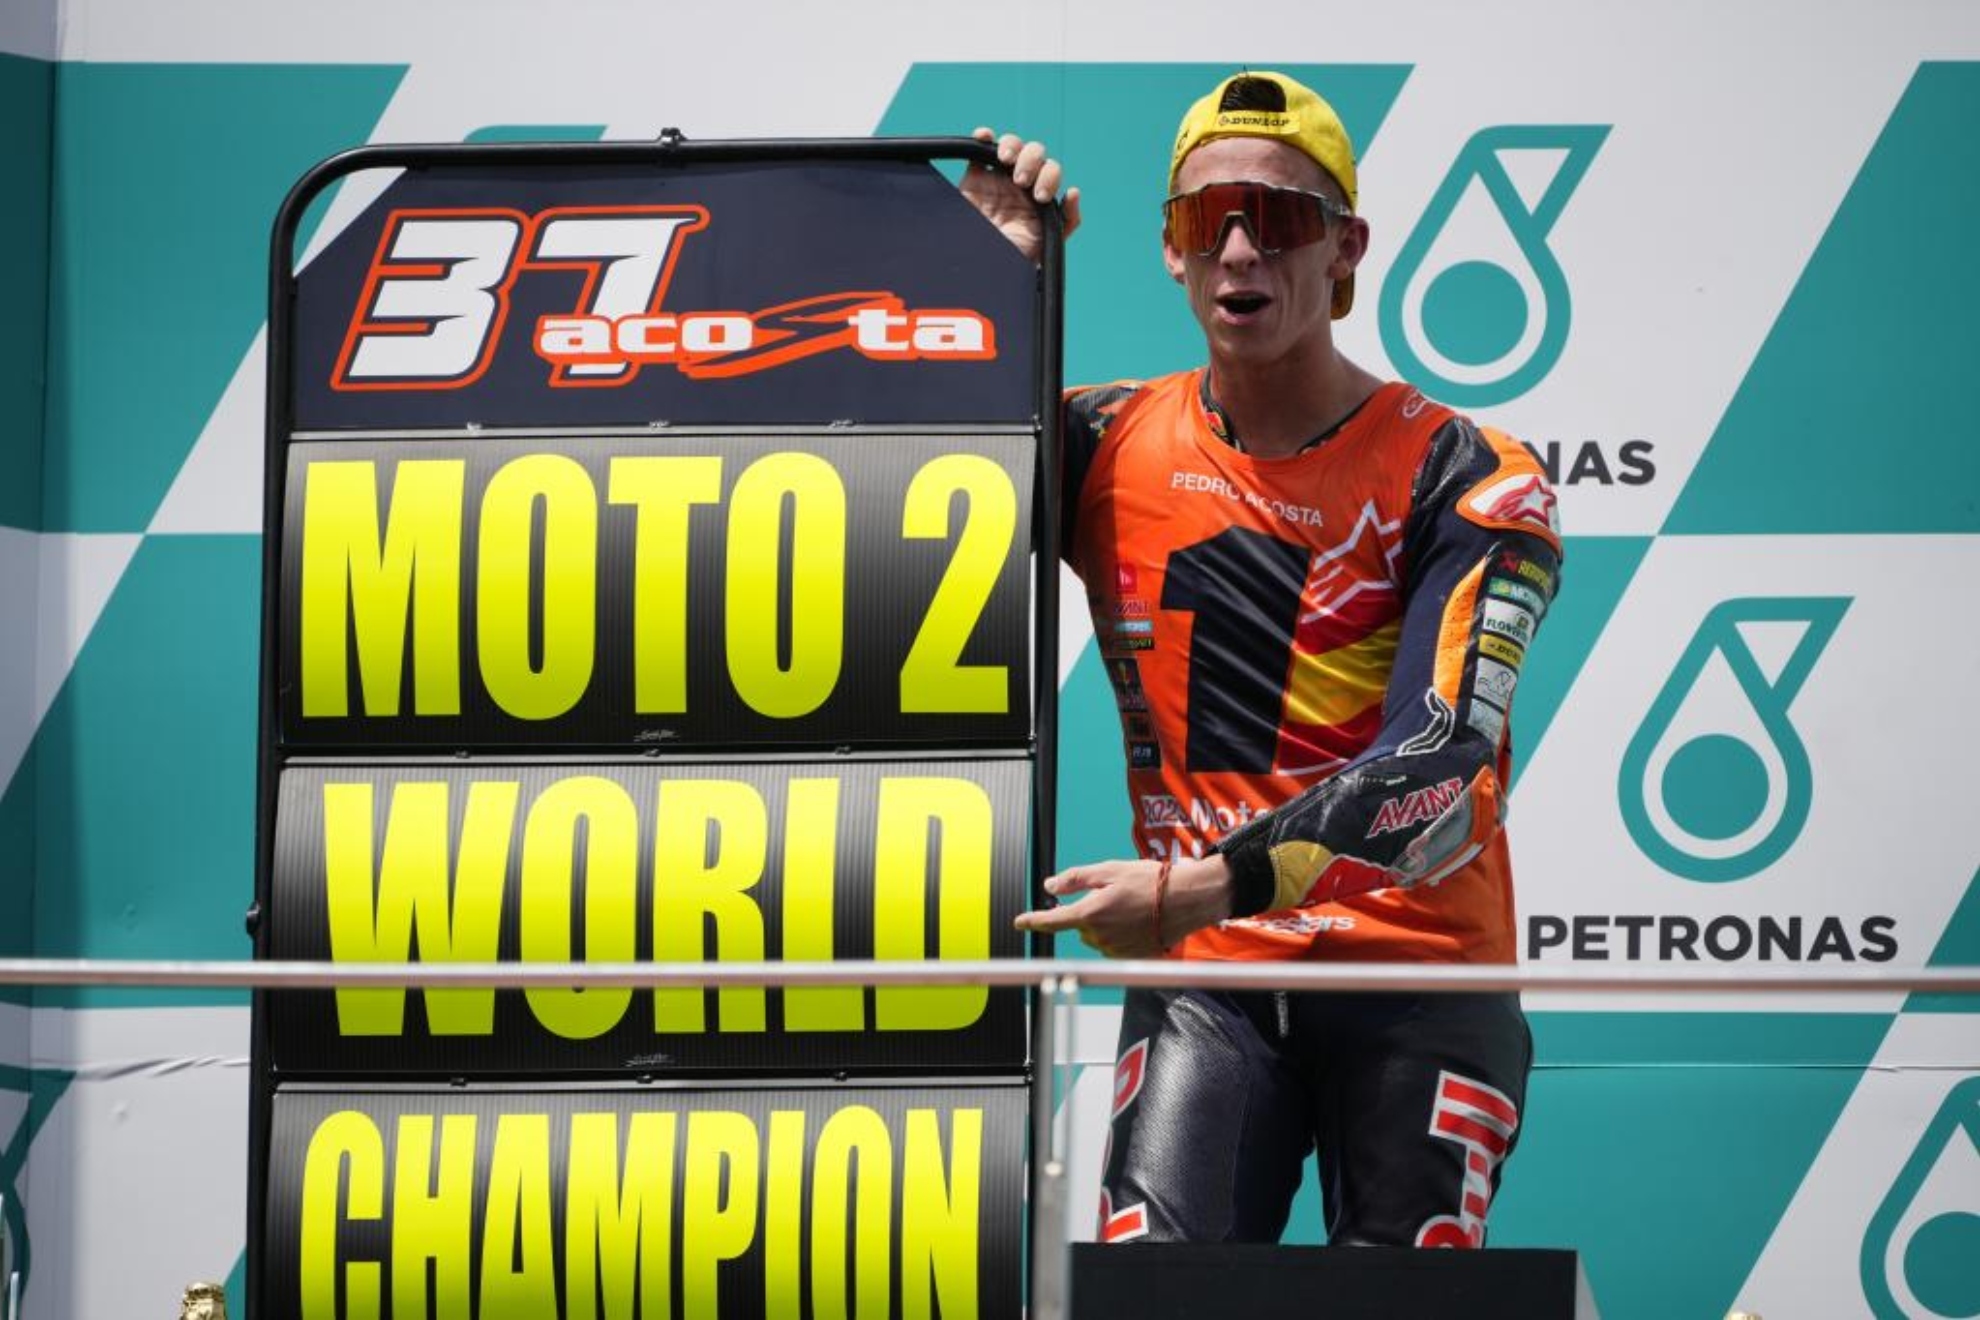 Pedro Acosta, campeón del mundo de Moto2